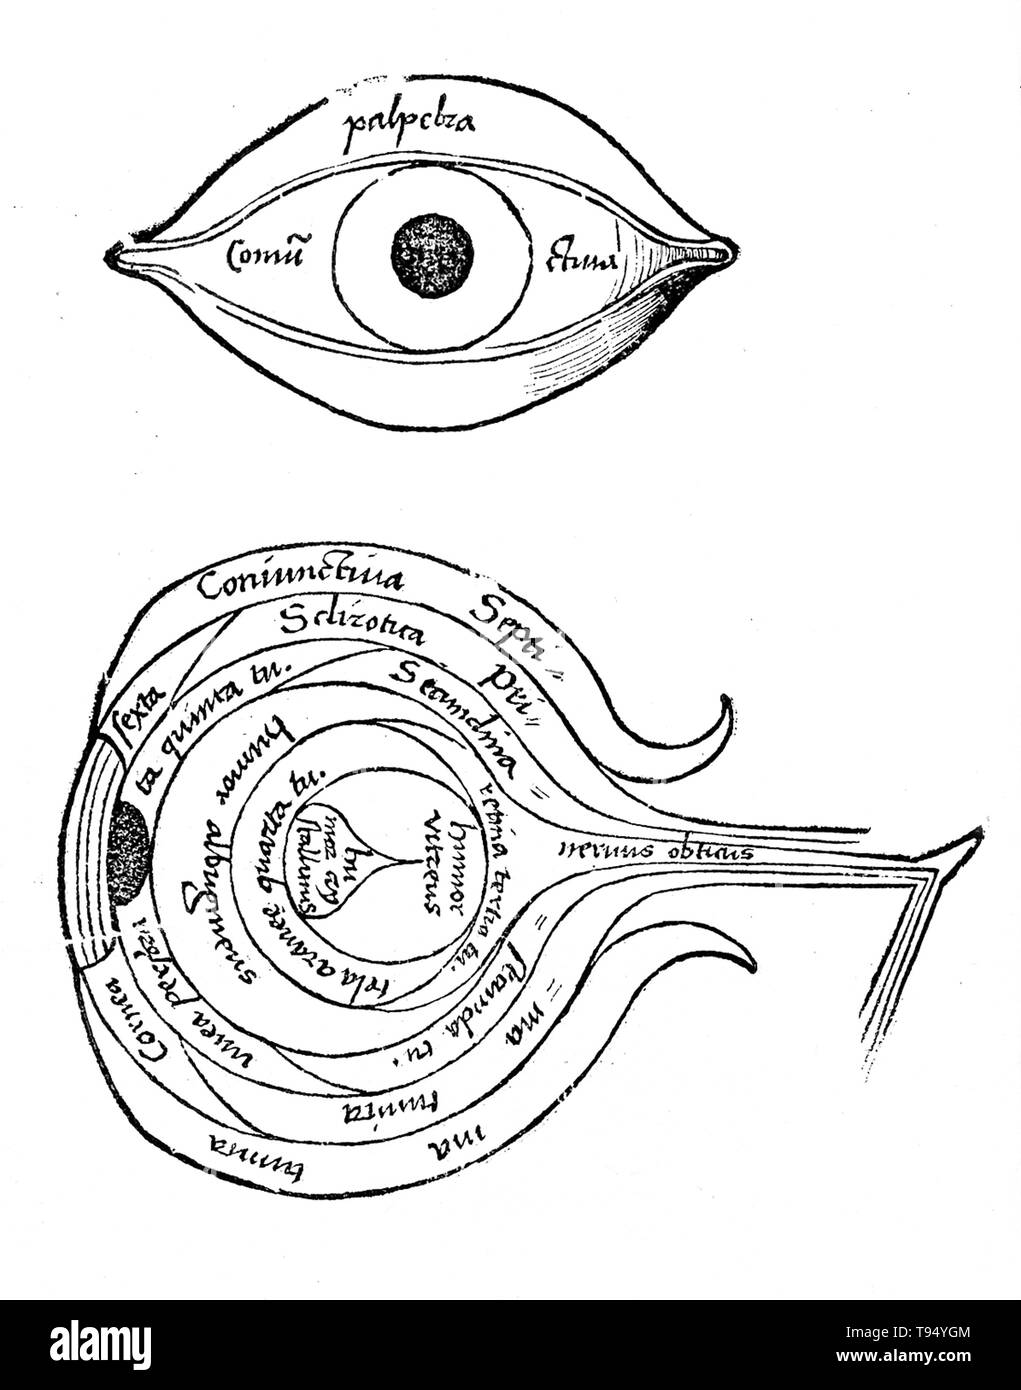 Diagramme de l'œil de Margarita philosophica de Gregor Reisch (1467-1525) était un écrivain humaniste des Chartreux. Son principal travail est le Margarita philosophica, qui est apparu pour la première fois à Fribourg en 1503. C'est une encyclopédie de la connaissance conçue comme un manuel pour les étudiants, et contient en douze livres grammaire latine, la dialectique, la rhétorique, l'arithmétique, la musique, la géométrie, l'astronomie, la physique, l'histoire naturelle, la physiologie, la psychologie et l'éthique. L'utilité de l'ouvrage a été porté par de nombreuses gravures sur bois et d'un index complet. Banque D'Images